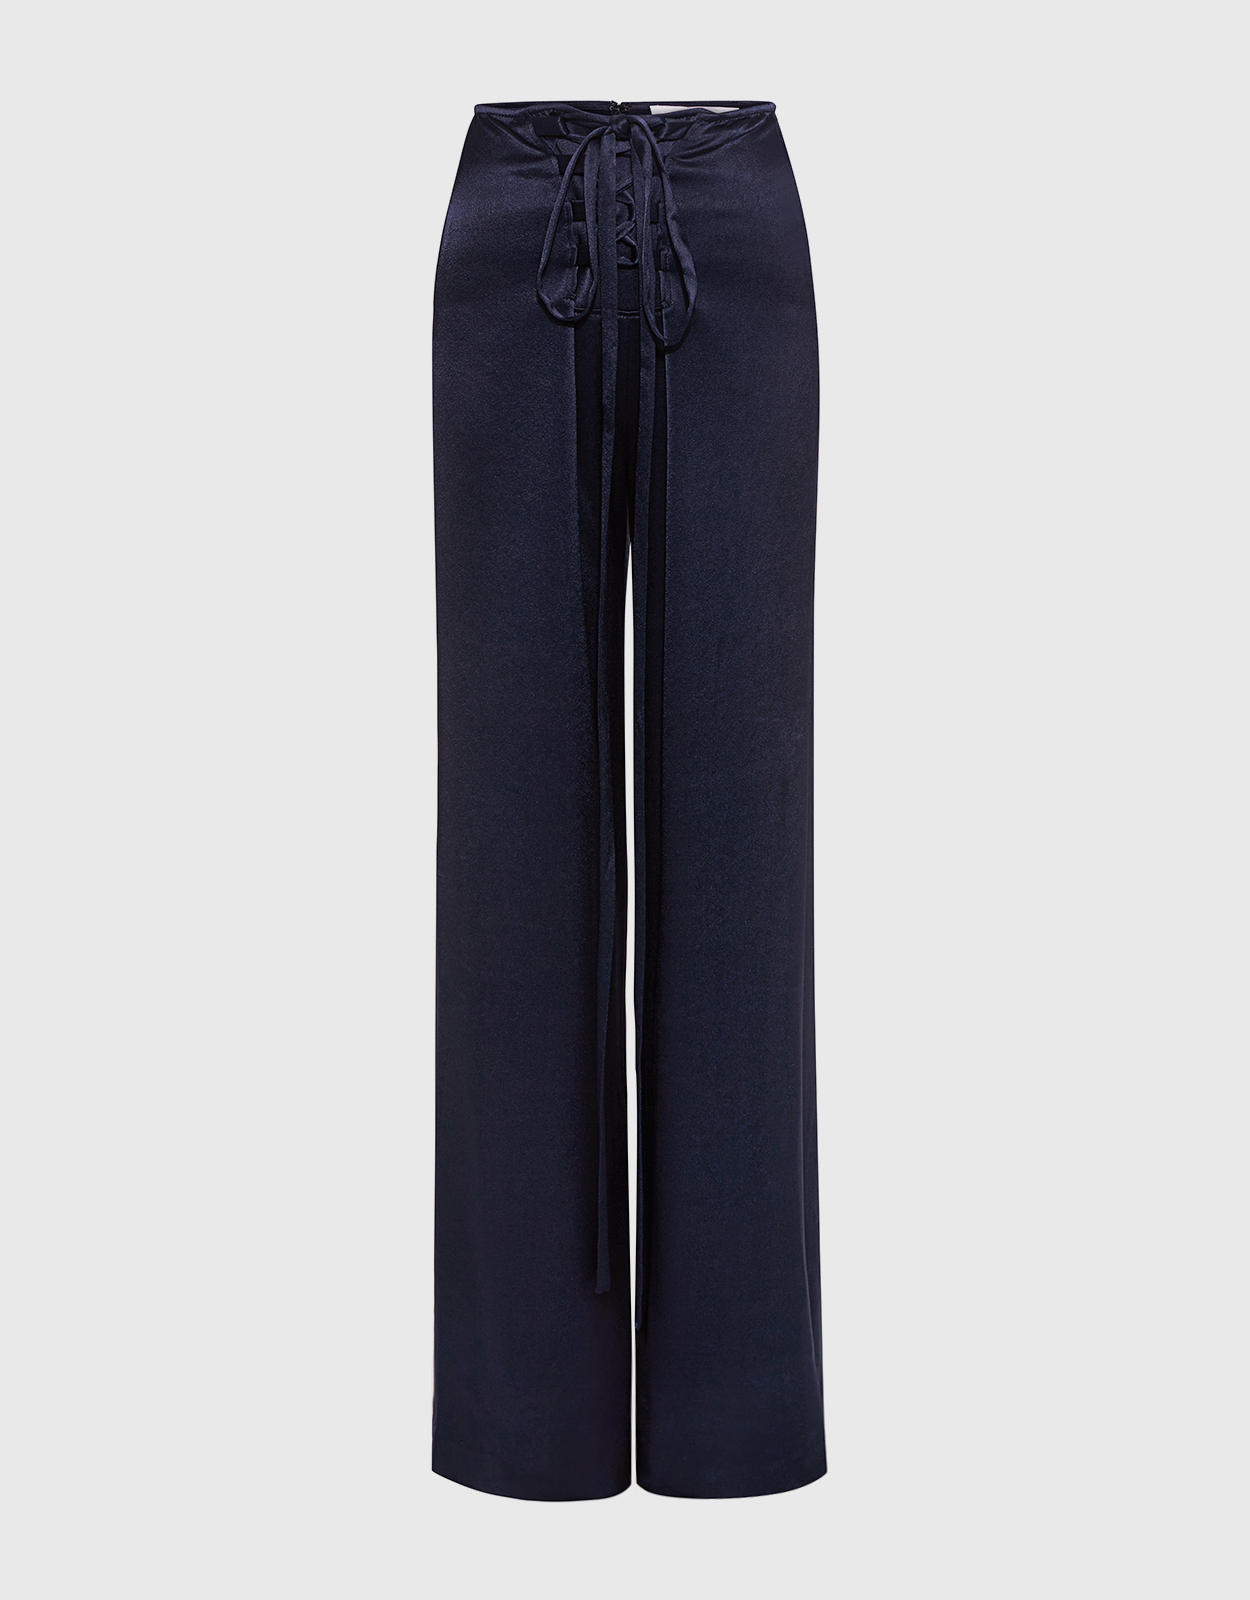 Derek Lam 10 Crosby High-rise Lace-Up Satin Sailor Pants (Pants,Wide Leg)